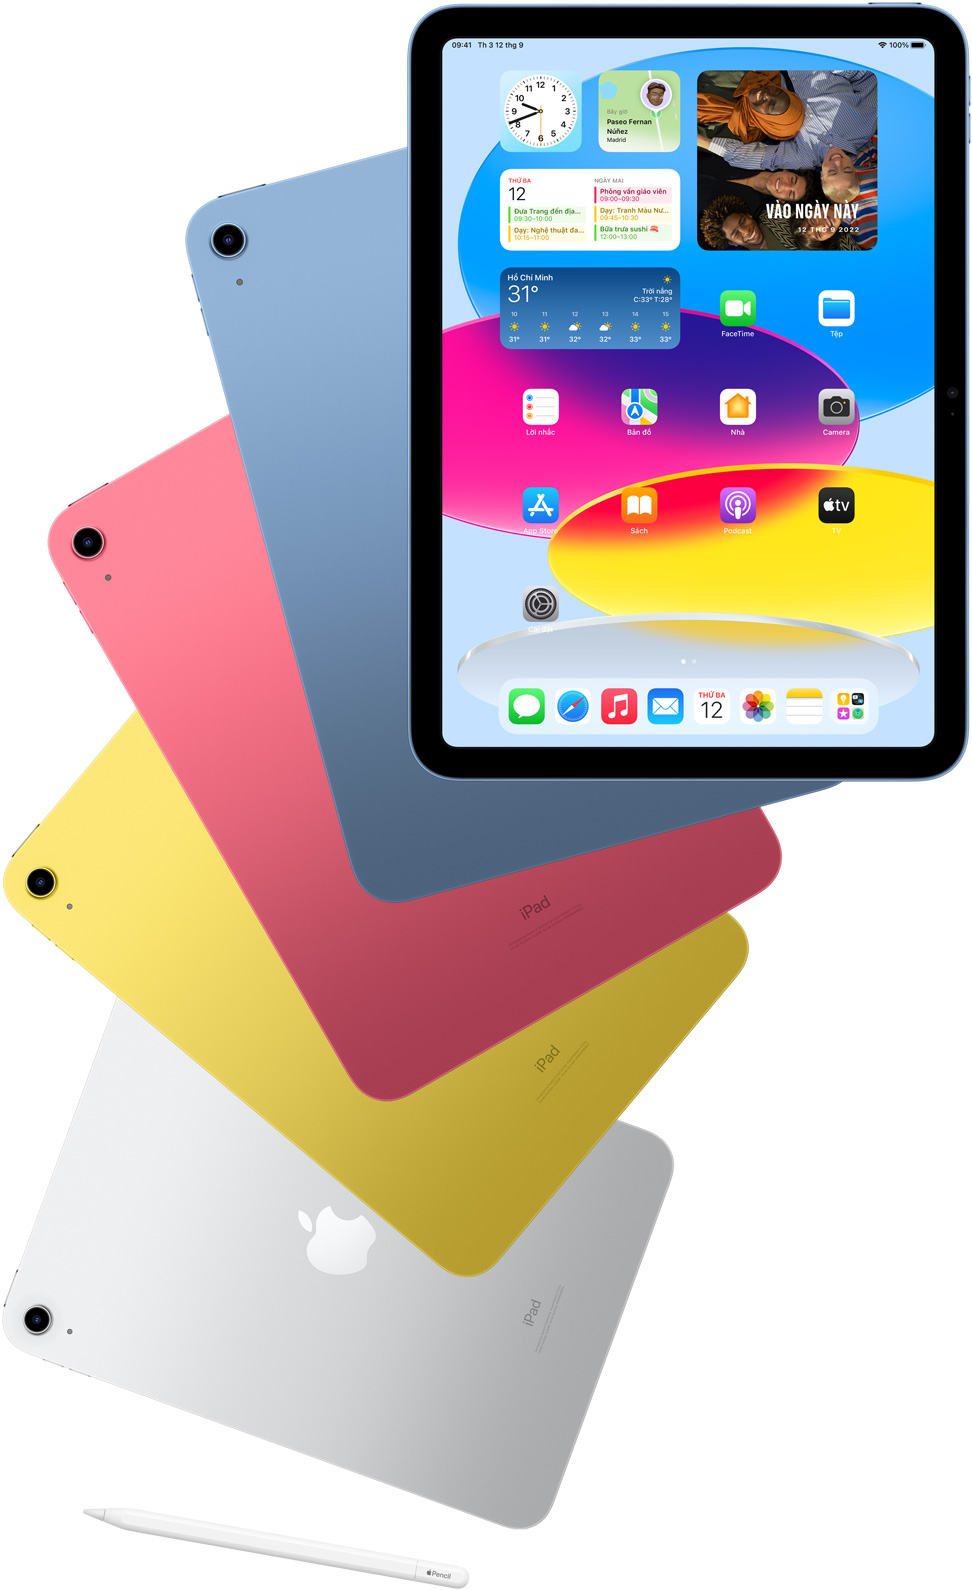 Ảnh mặt trước của iPad có màn hình chính, cùng mặt sau của các iPad màu xanh dương, hồng, vàng và bạc đặt phía sau. Apple Pencil nằm gần các mẫu iPad được sắp xếp.